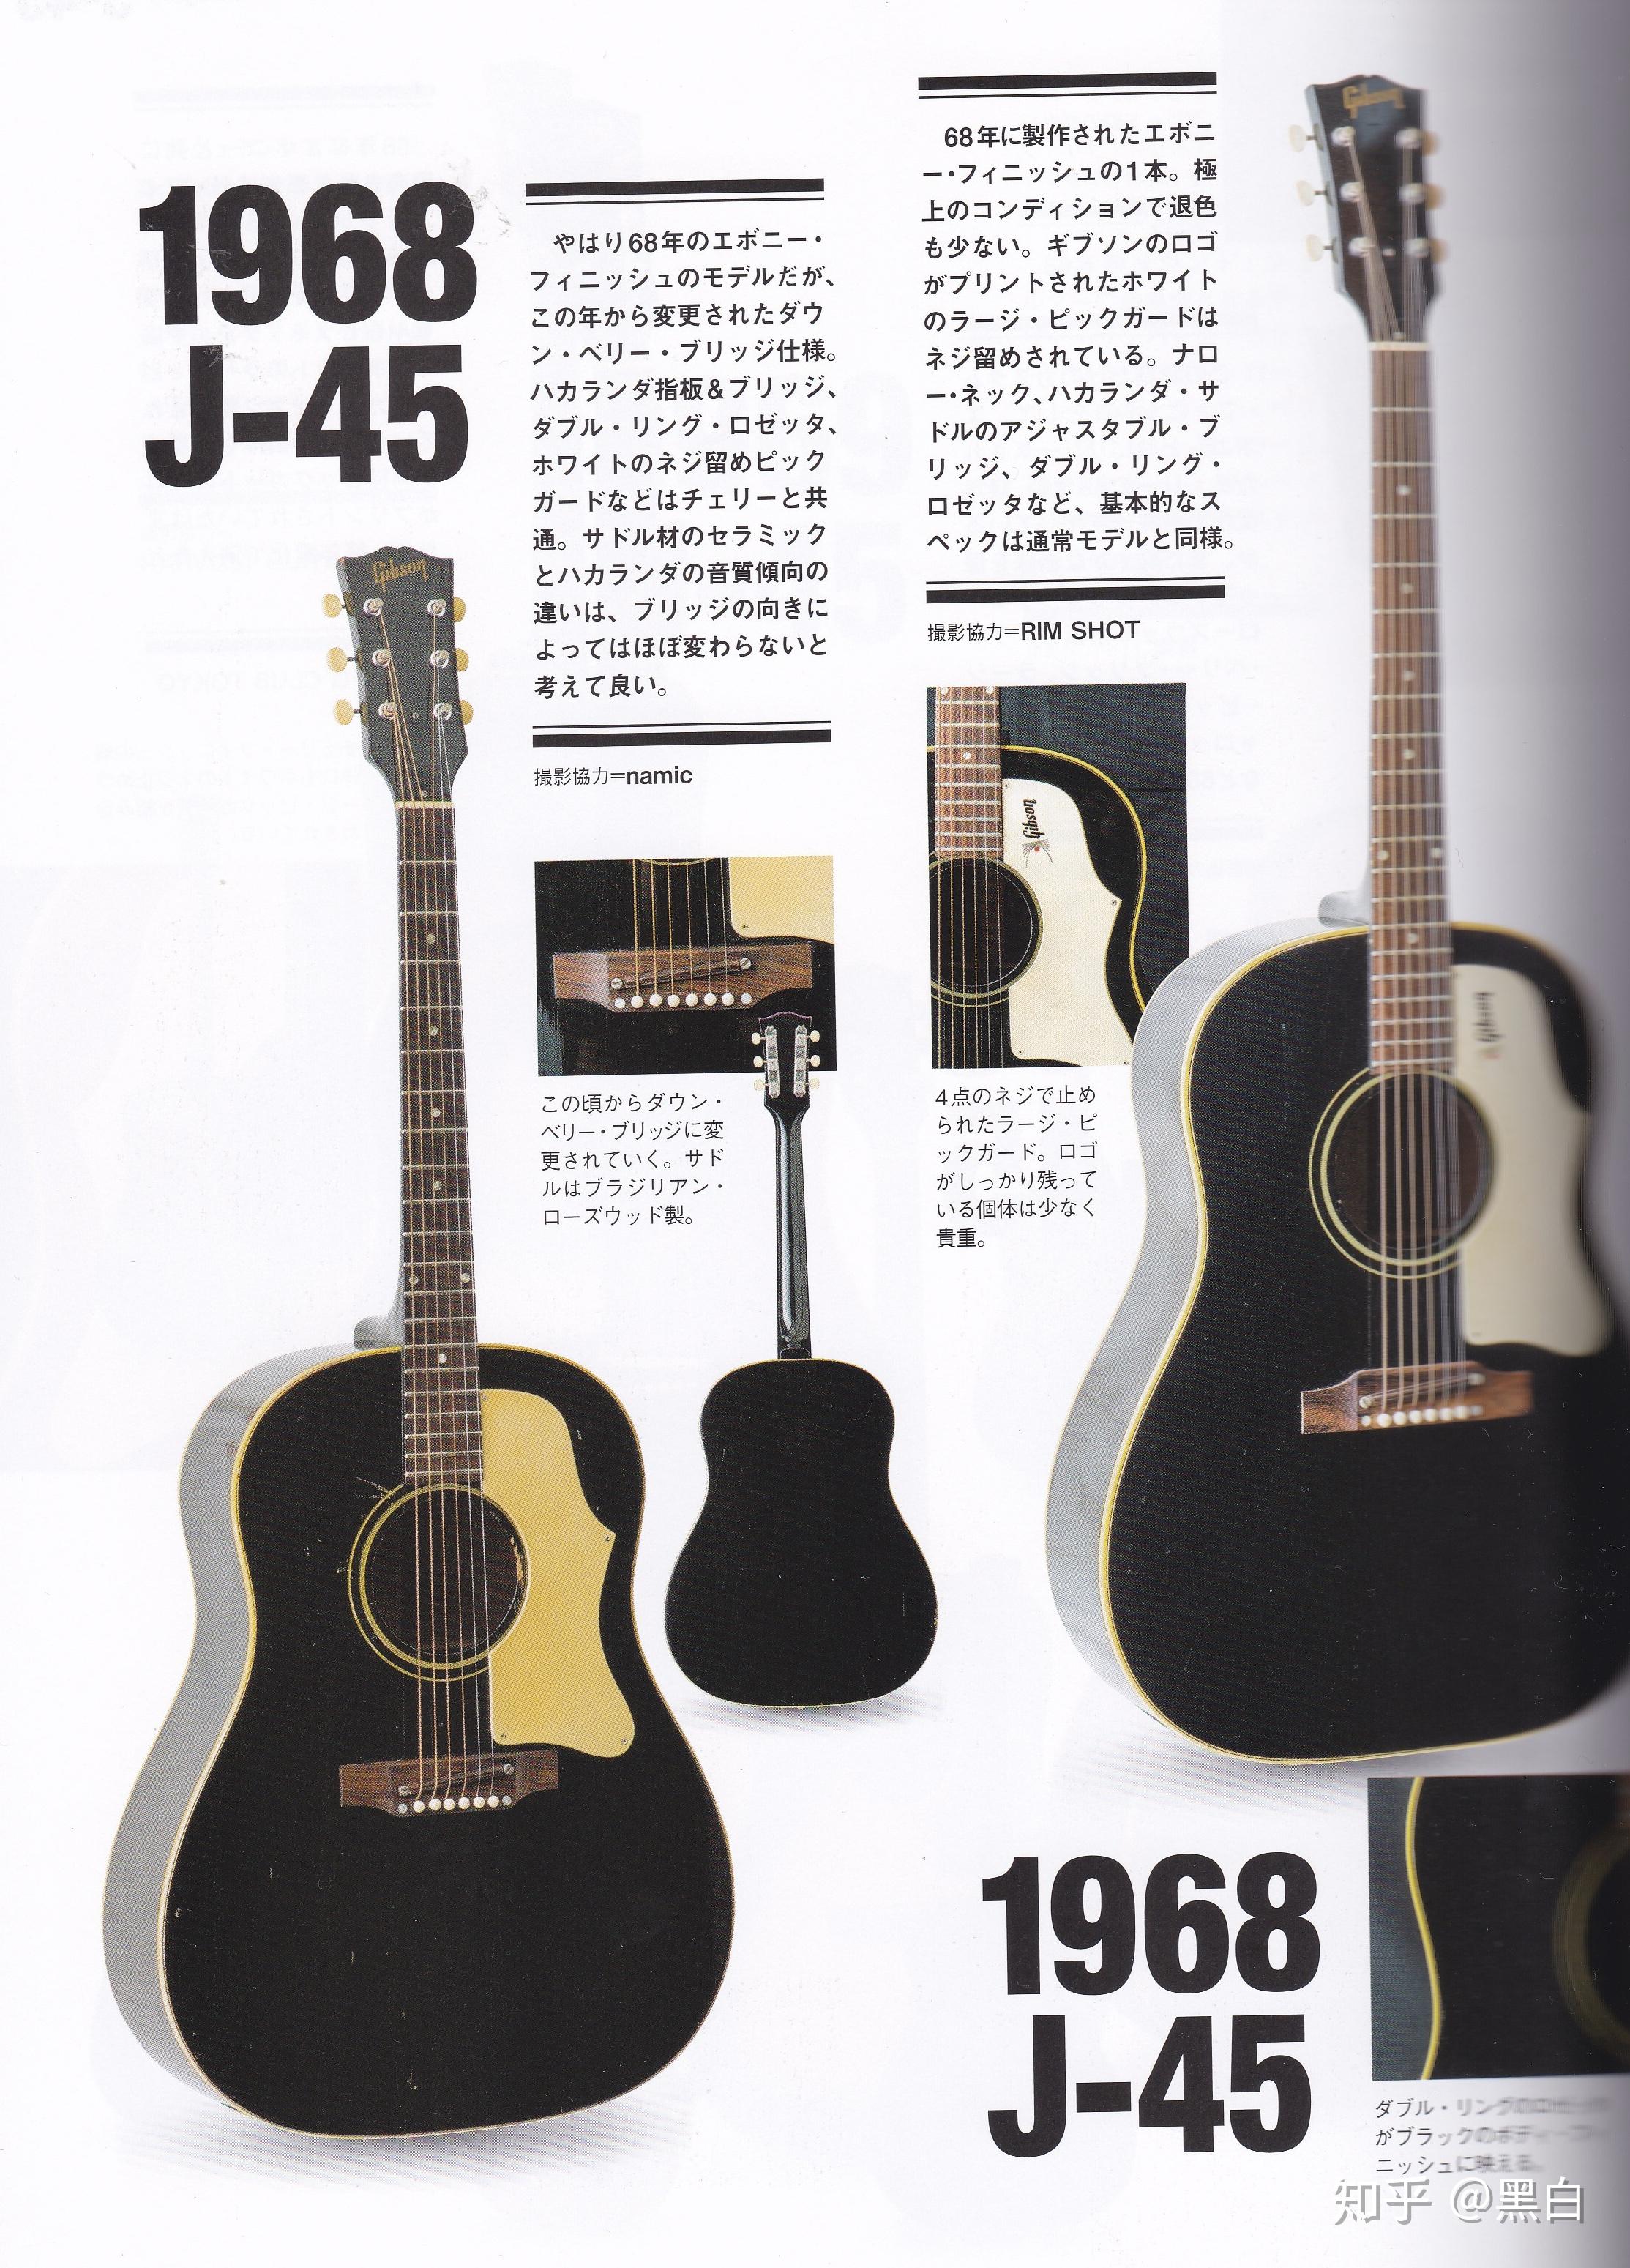 主要给大家简单的介绍了一下gibson木吉他以及j45型号的木琴的历史